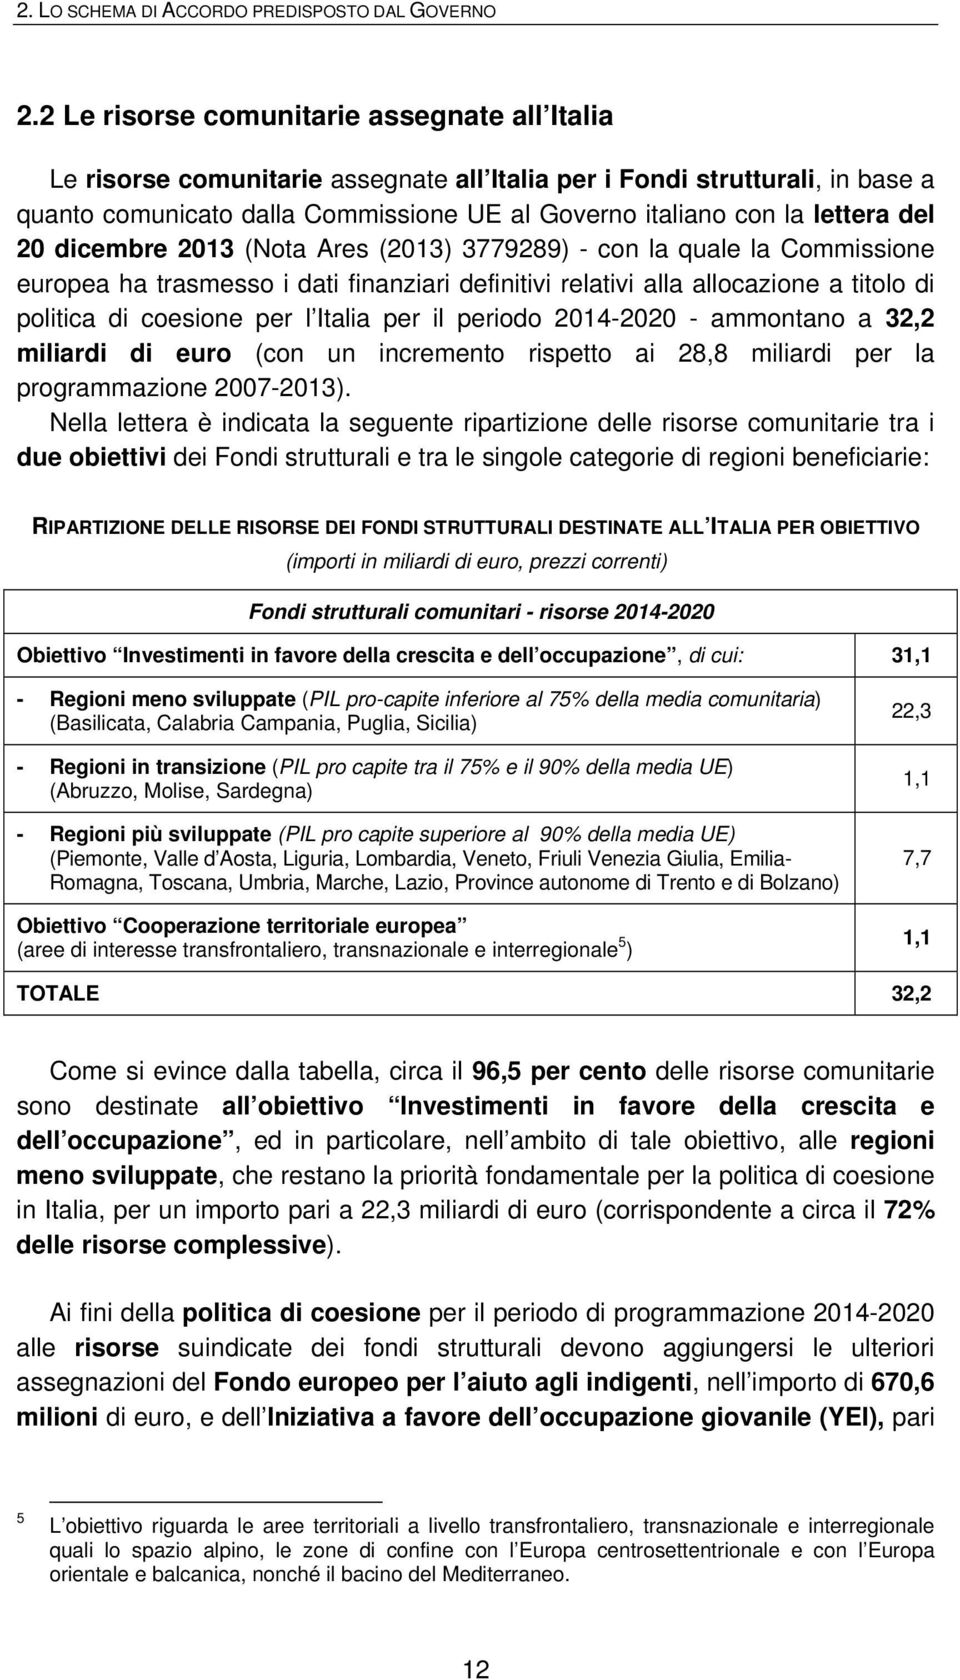 del 20 dicembre 2013 (Nota Ares (2013) 3779289) - con la quale la Commissione europea ha trasmesso i dati finanziari definitivi relativi alla allocazione a titolo di politica di coesione per l Italia